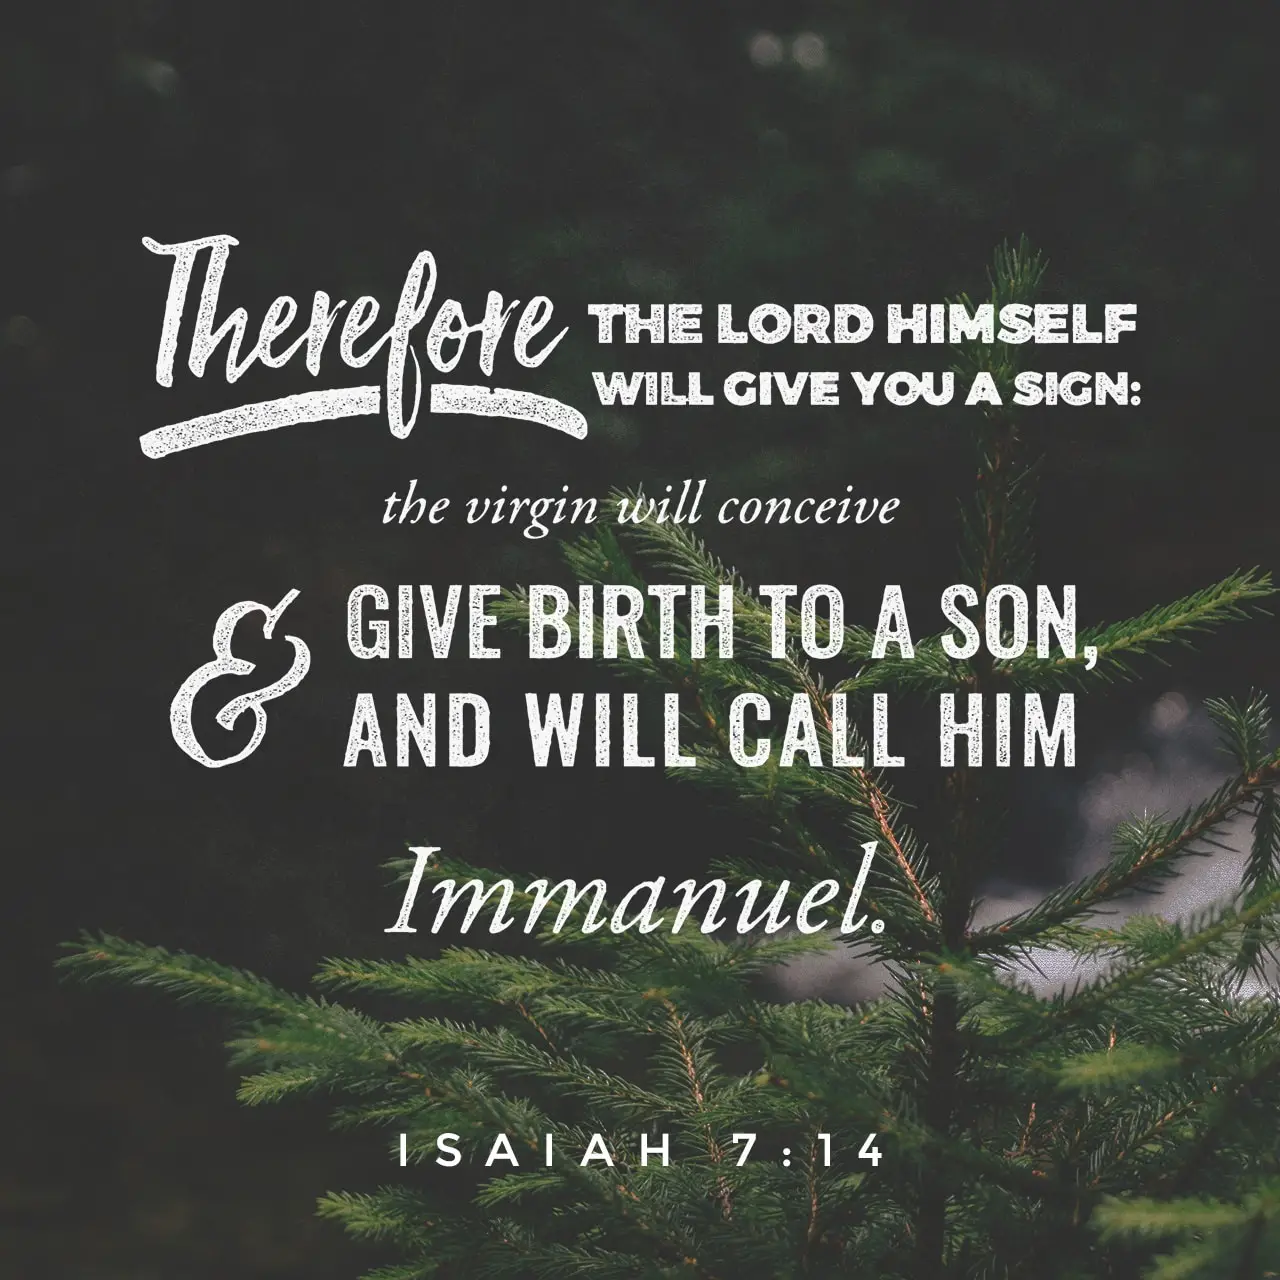 Call Him Immanuel - Isaiah 7:14